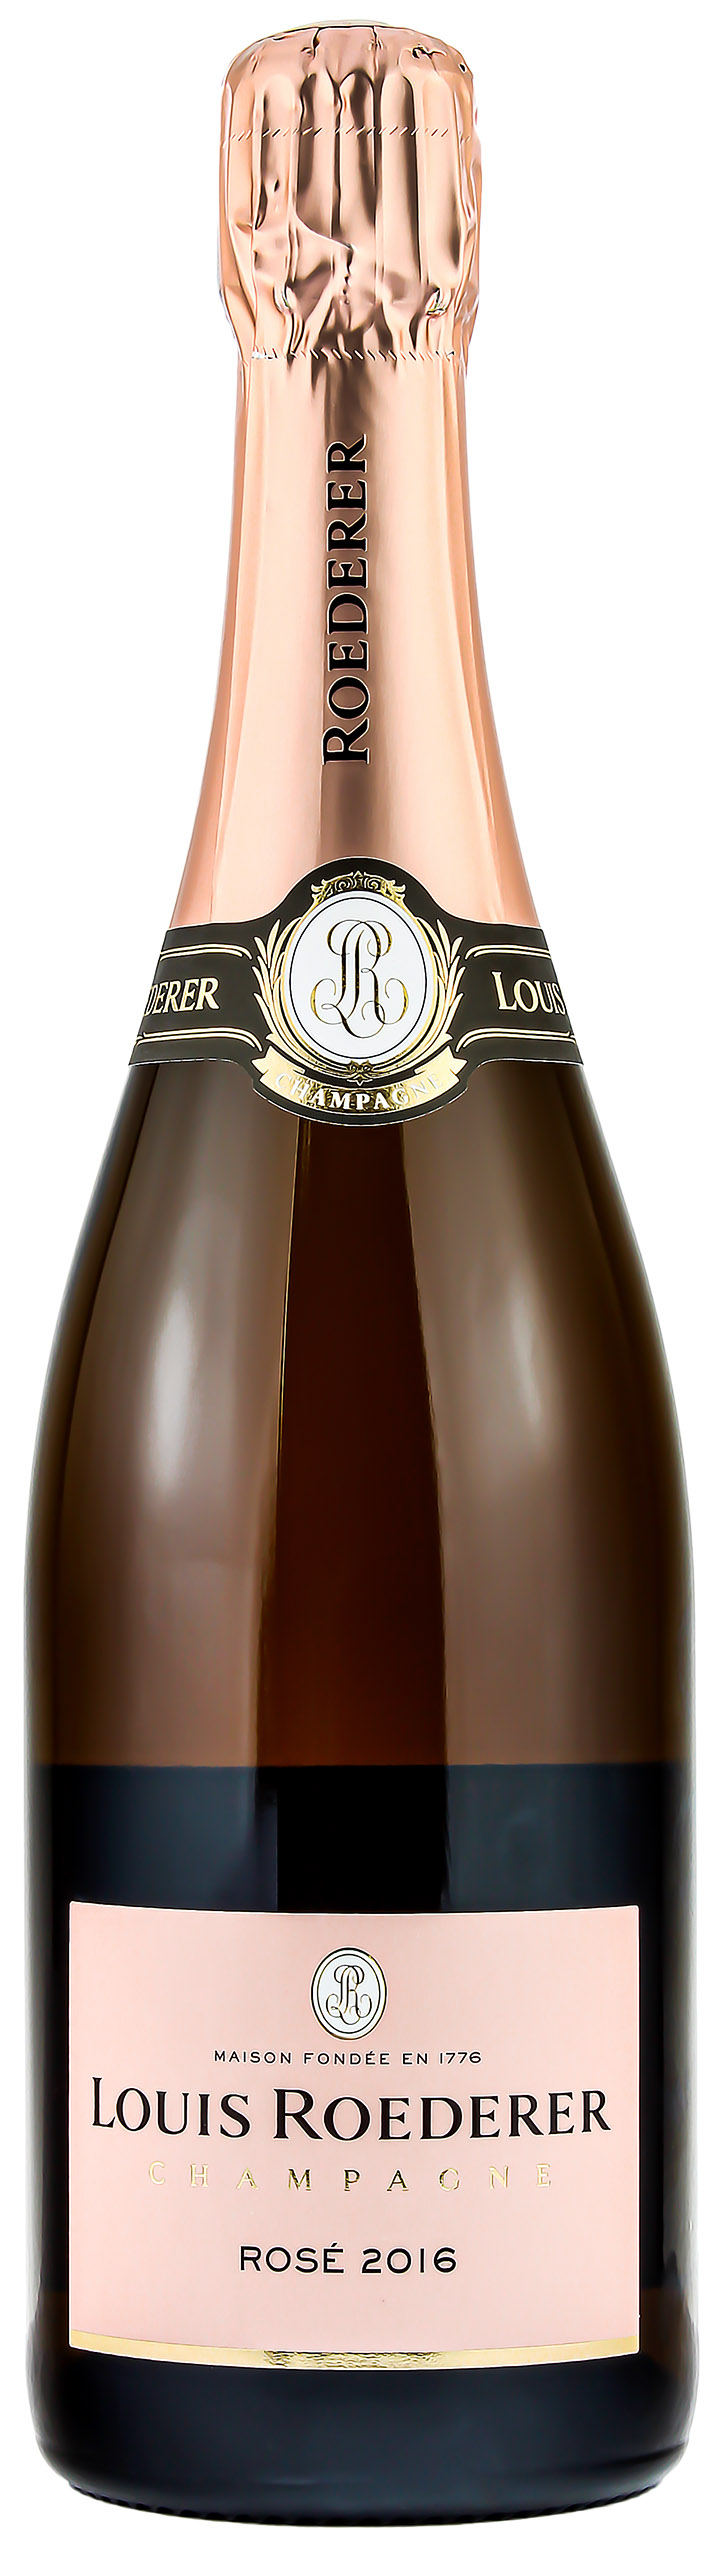 Louis Roederer Rose 2016 Champagner 12.5% 0,75l